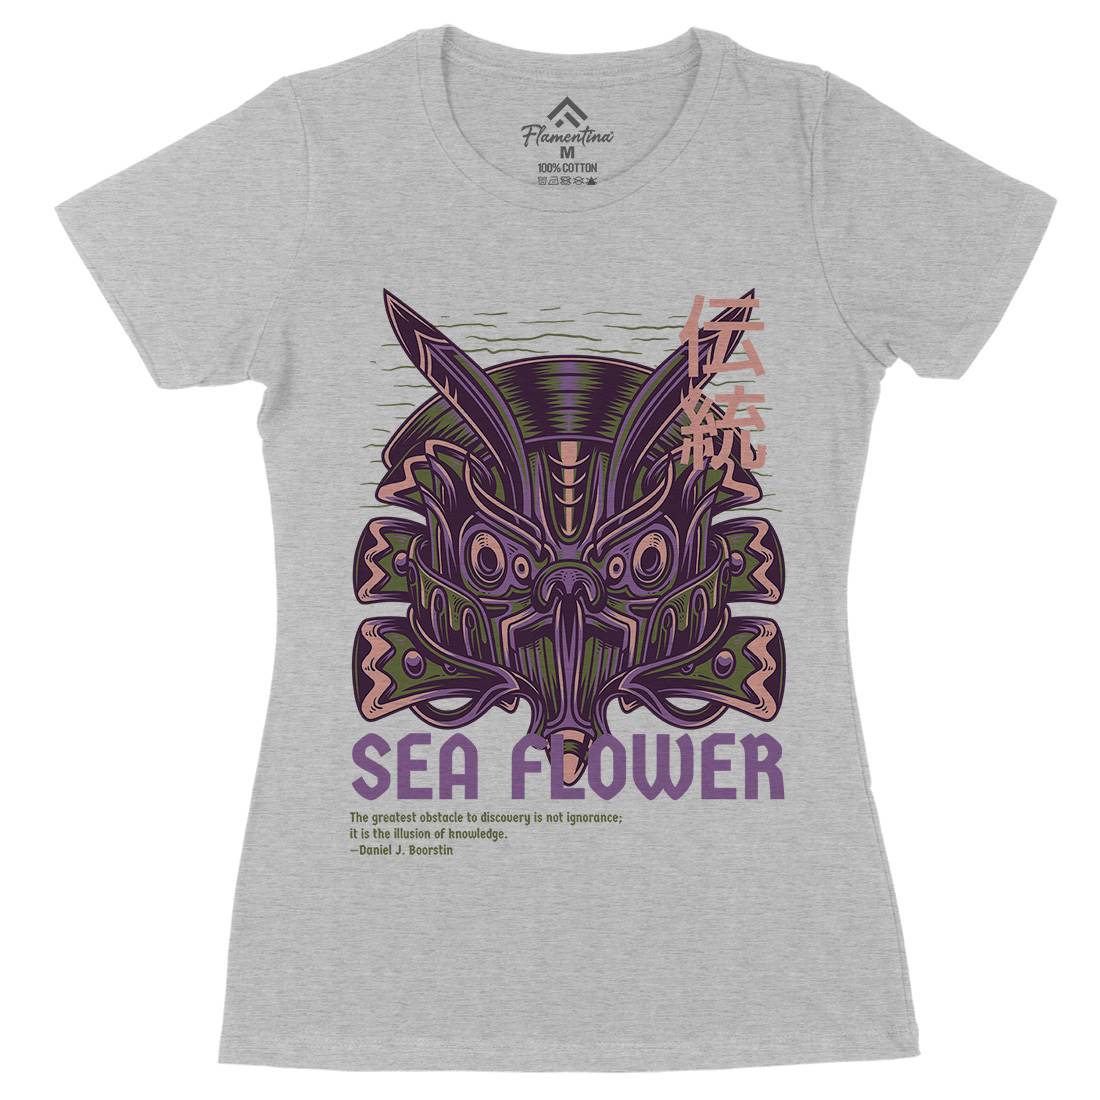 Sea Flower Womens Organic Crew Neck T-Shirt Navy D810